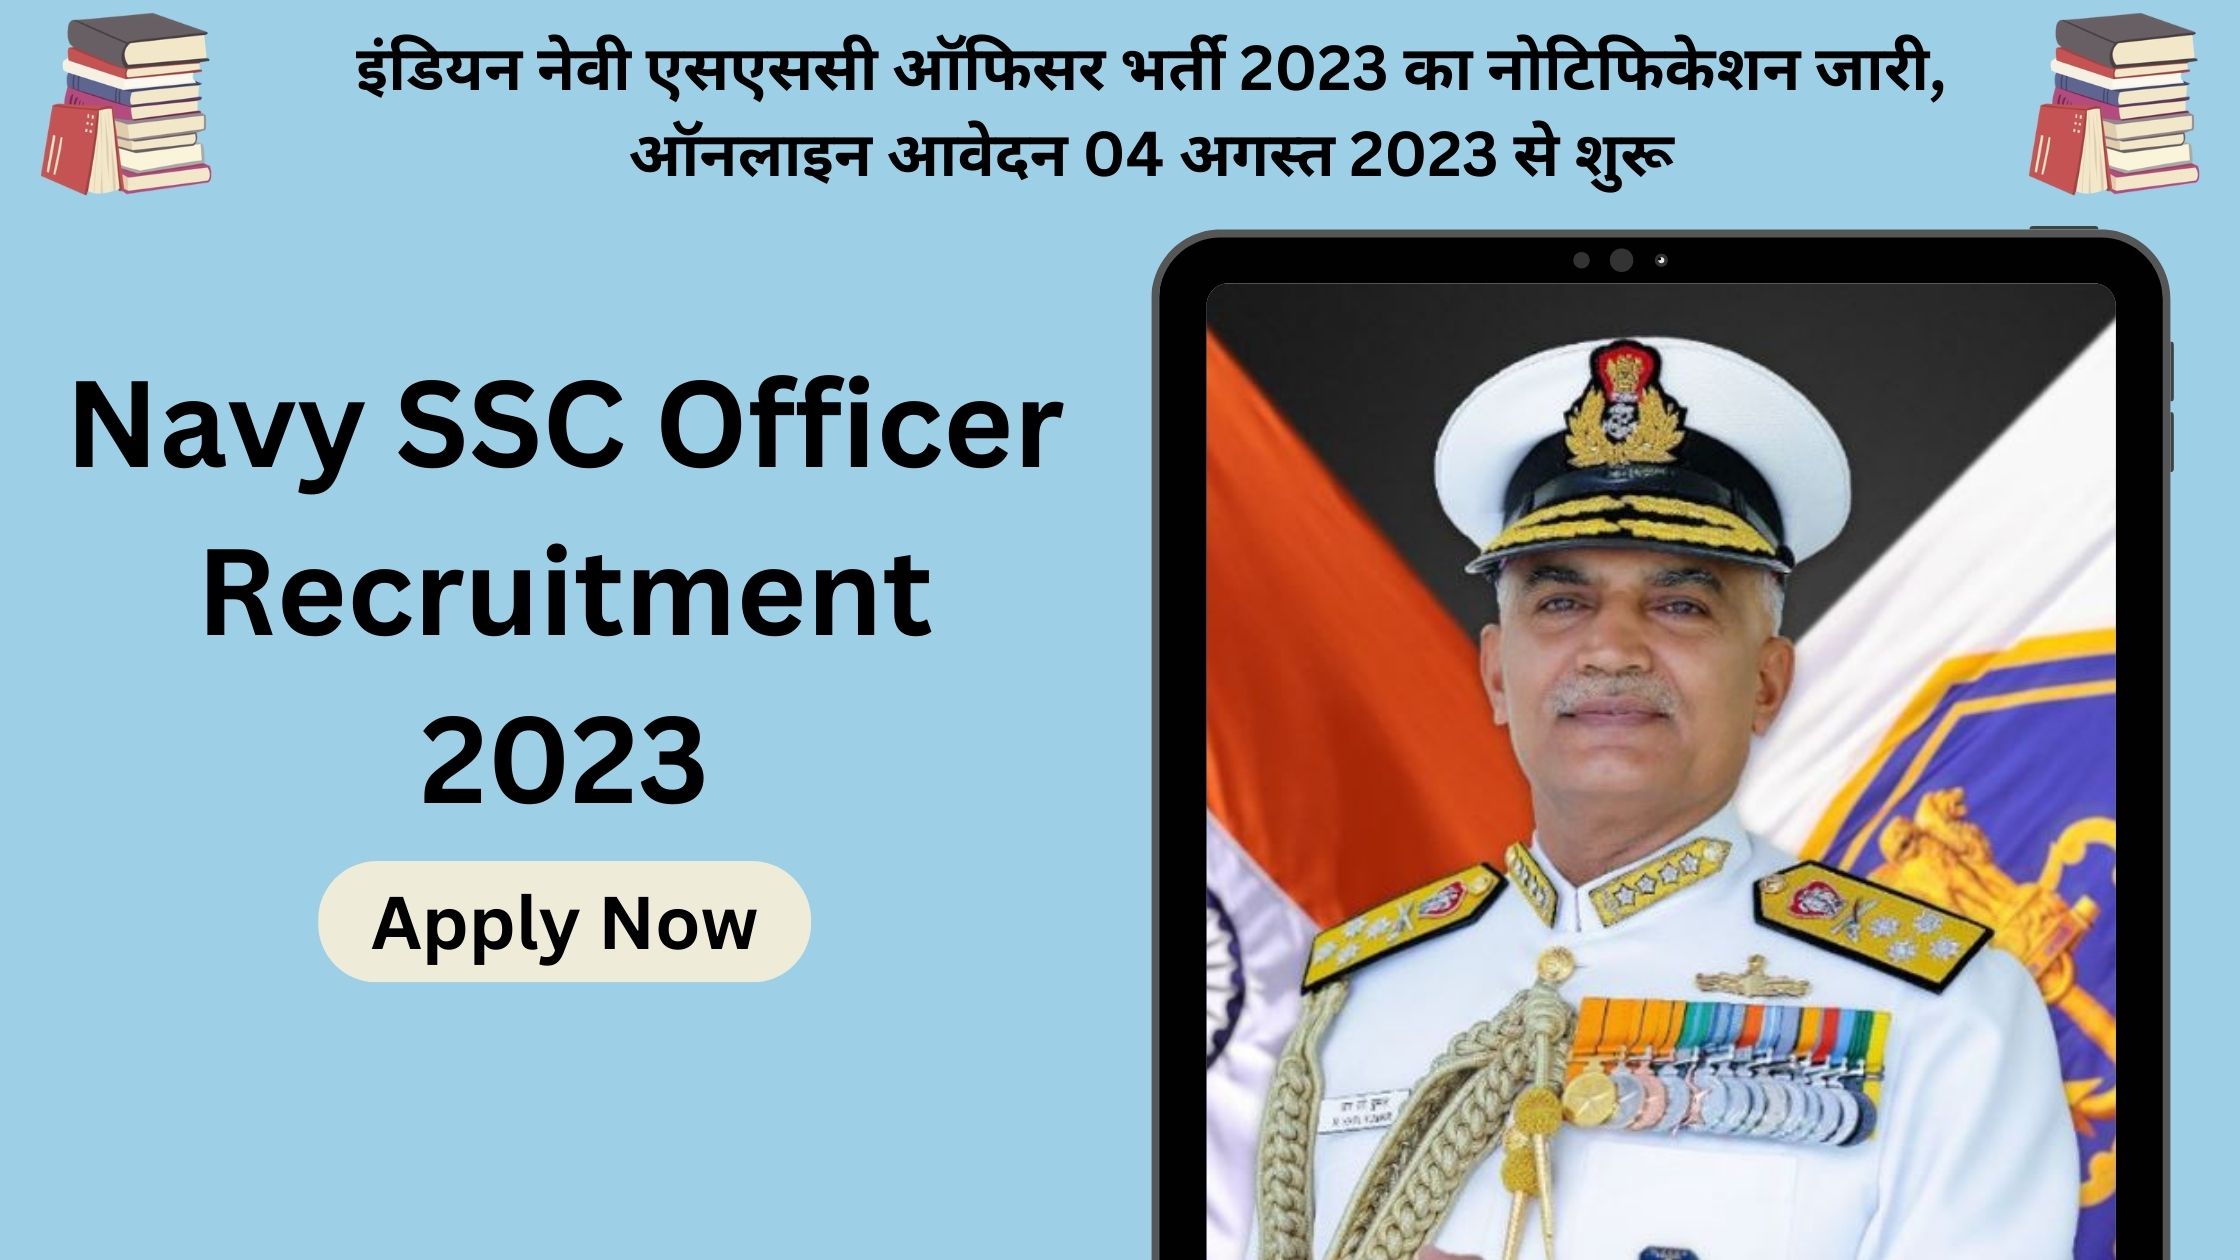 Navy SSC Officer Recruitment 2023 Apply Now